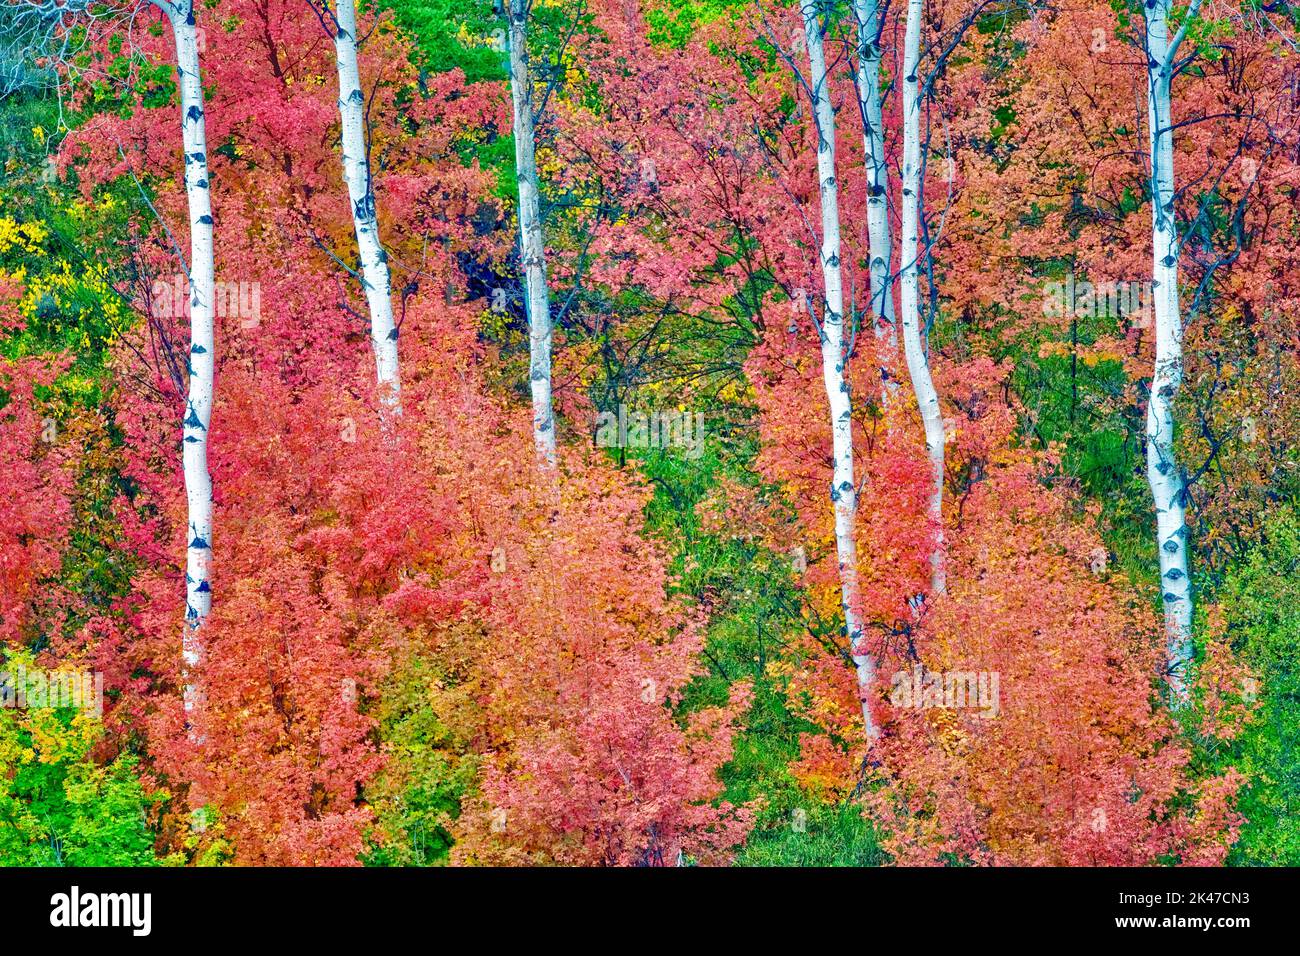 Gemischte Sorten von Ahornbäume mit Espen im Herbst Farbe. Targhee National Forest, Idaho Stockfoto